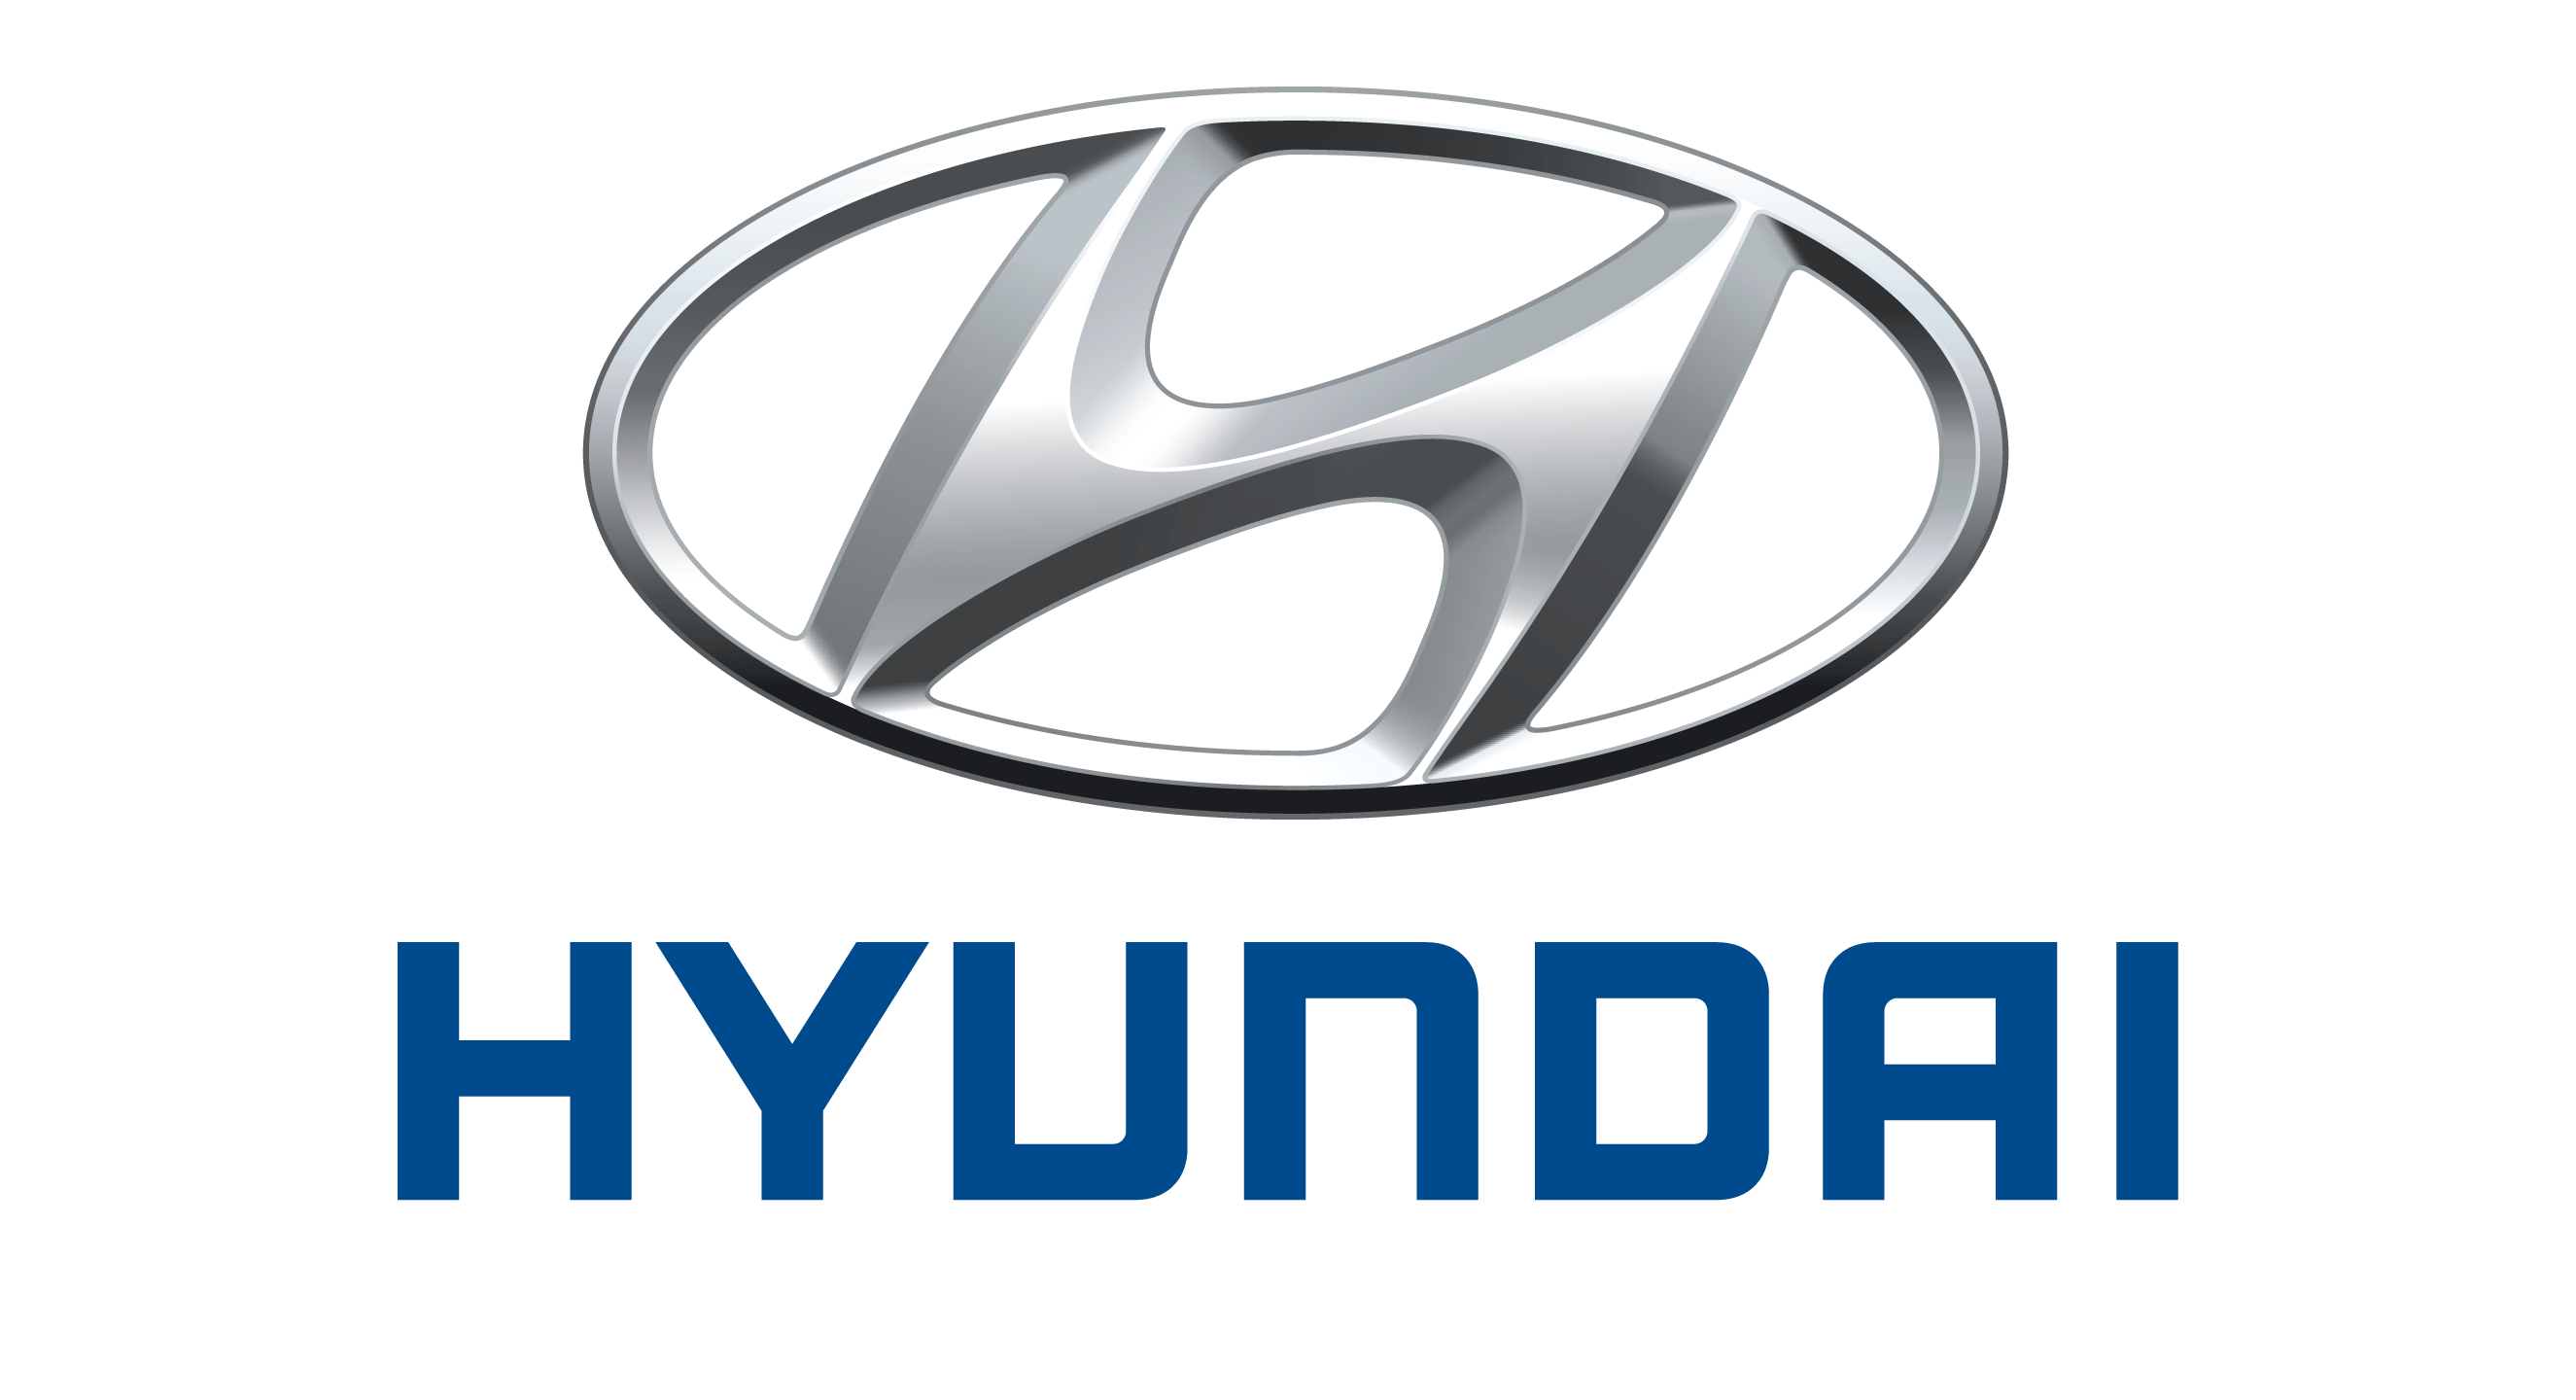 logo xe hyundai moi nhat - Avanza 2021: Giá xe và khuyến mãi hấp dẫn tháng [hienthithang]